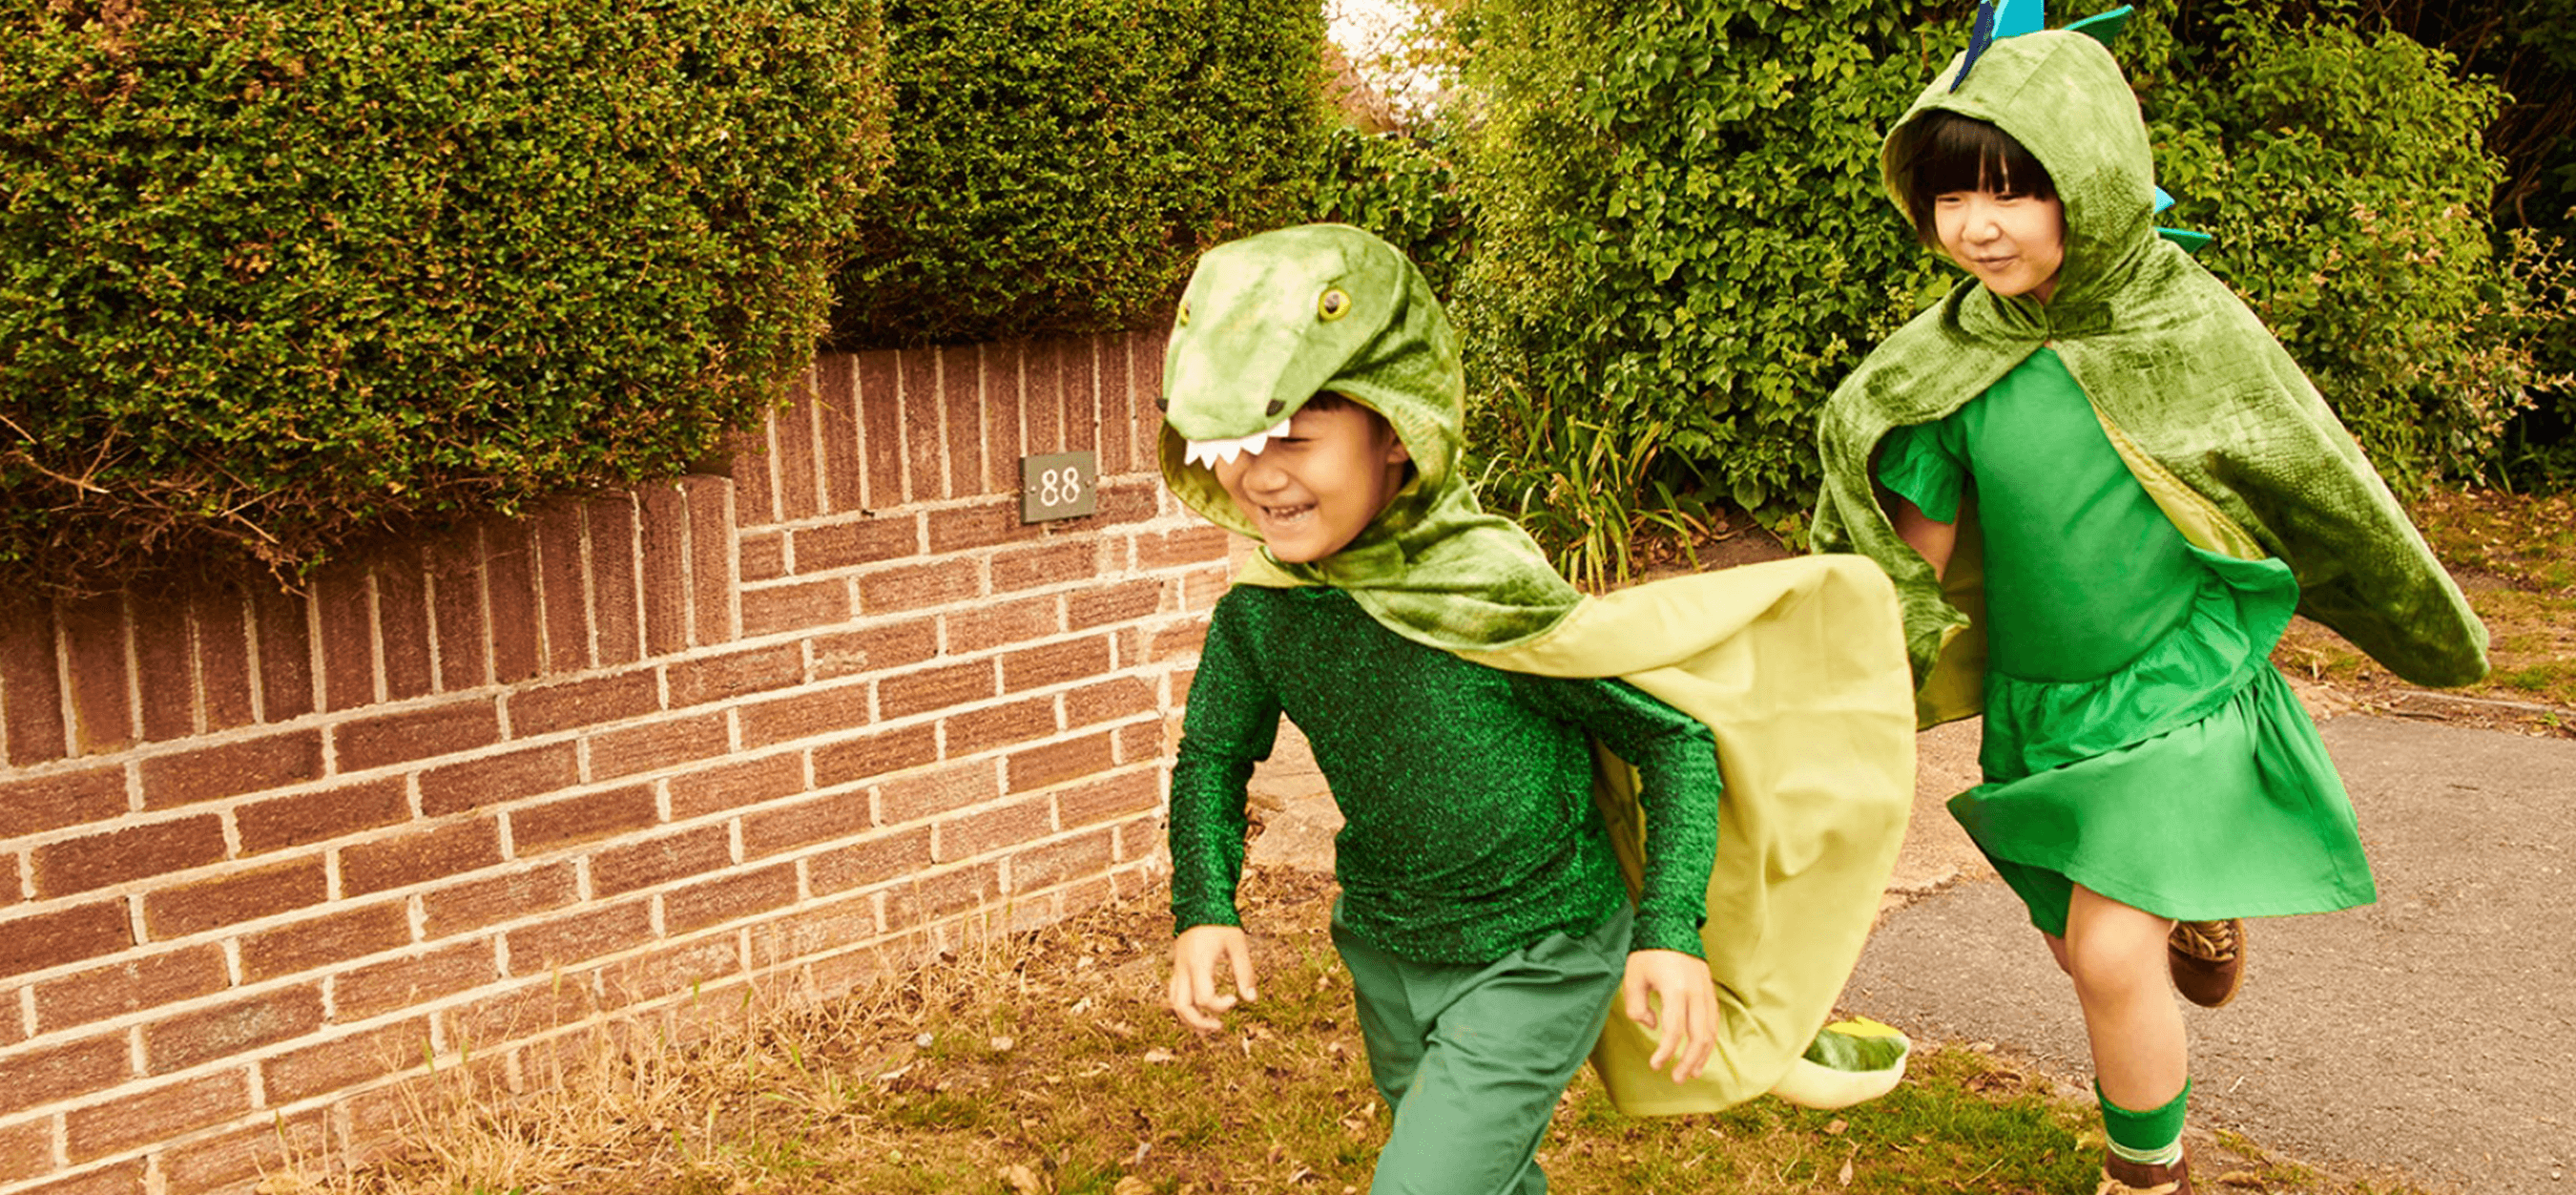 kids running around in dinosaur costumes